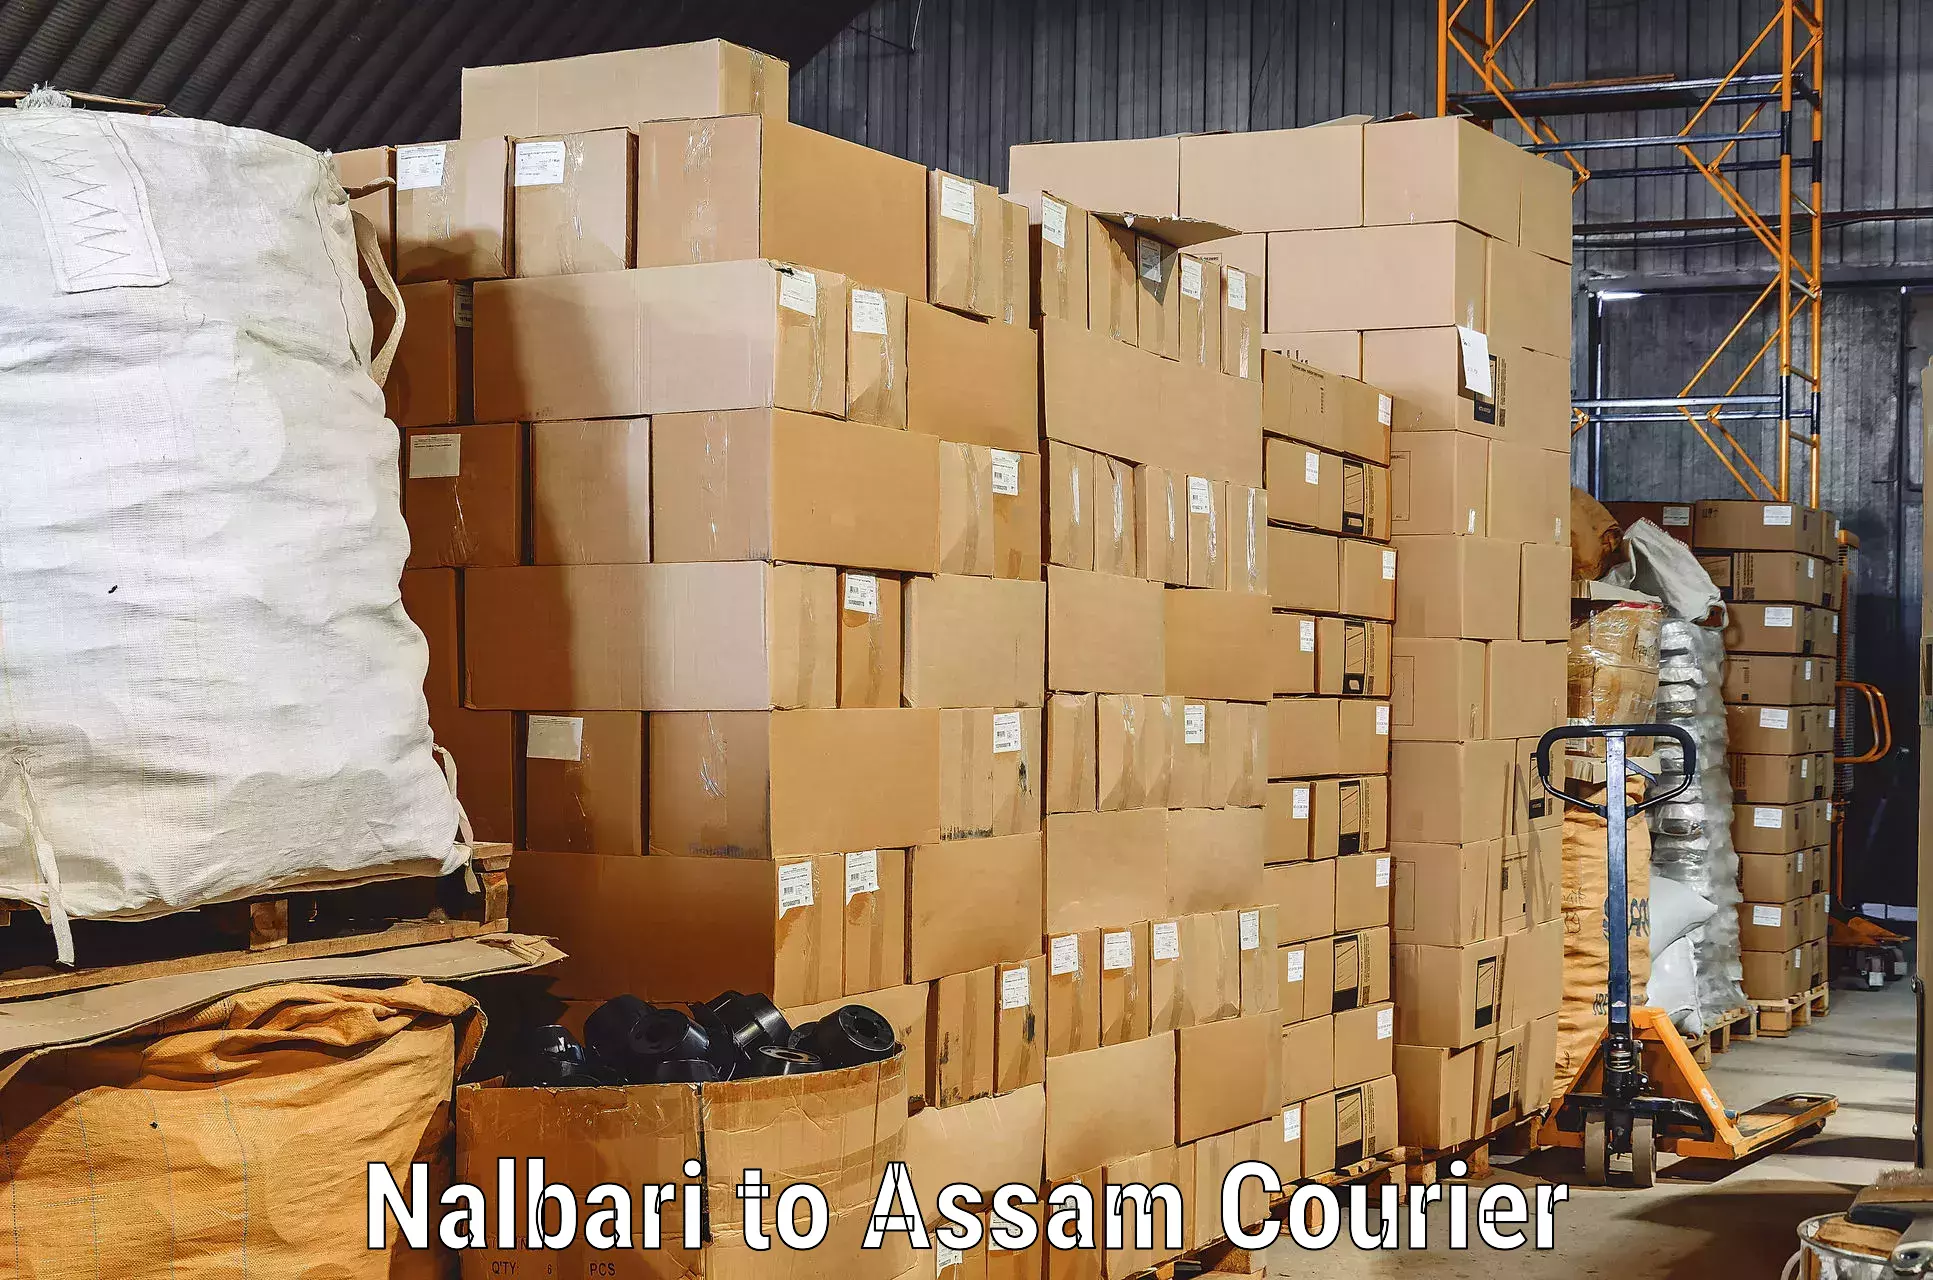 Home shifting experts Nalbari to Assam